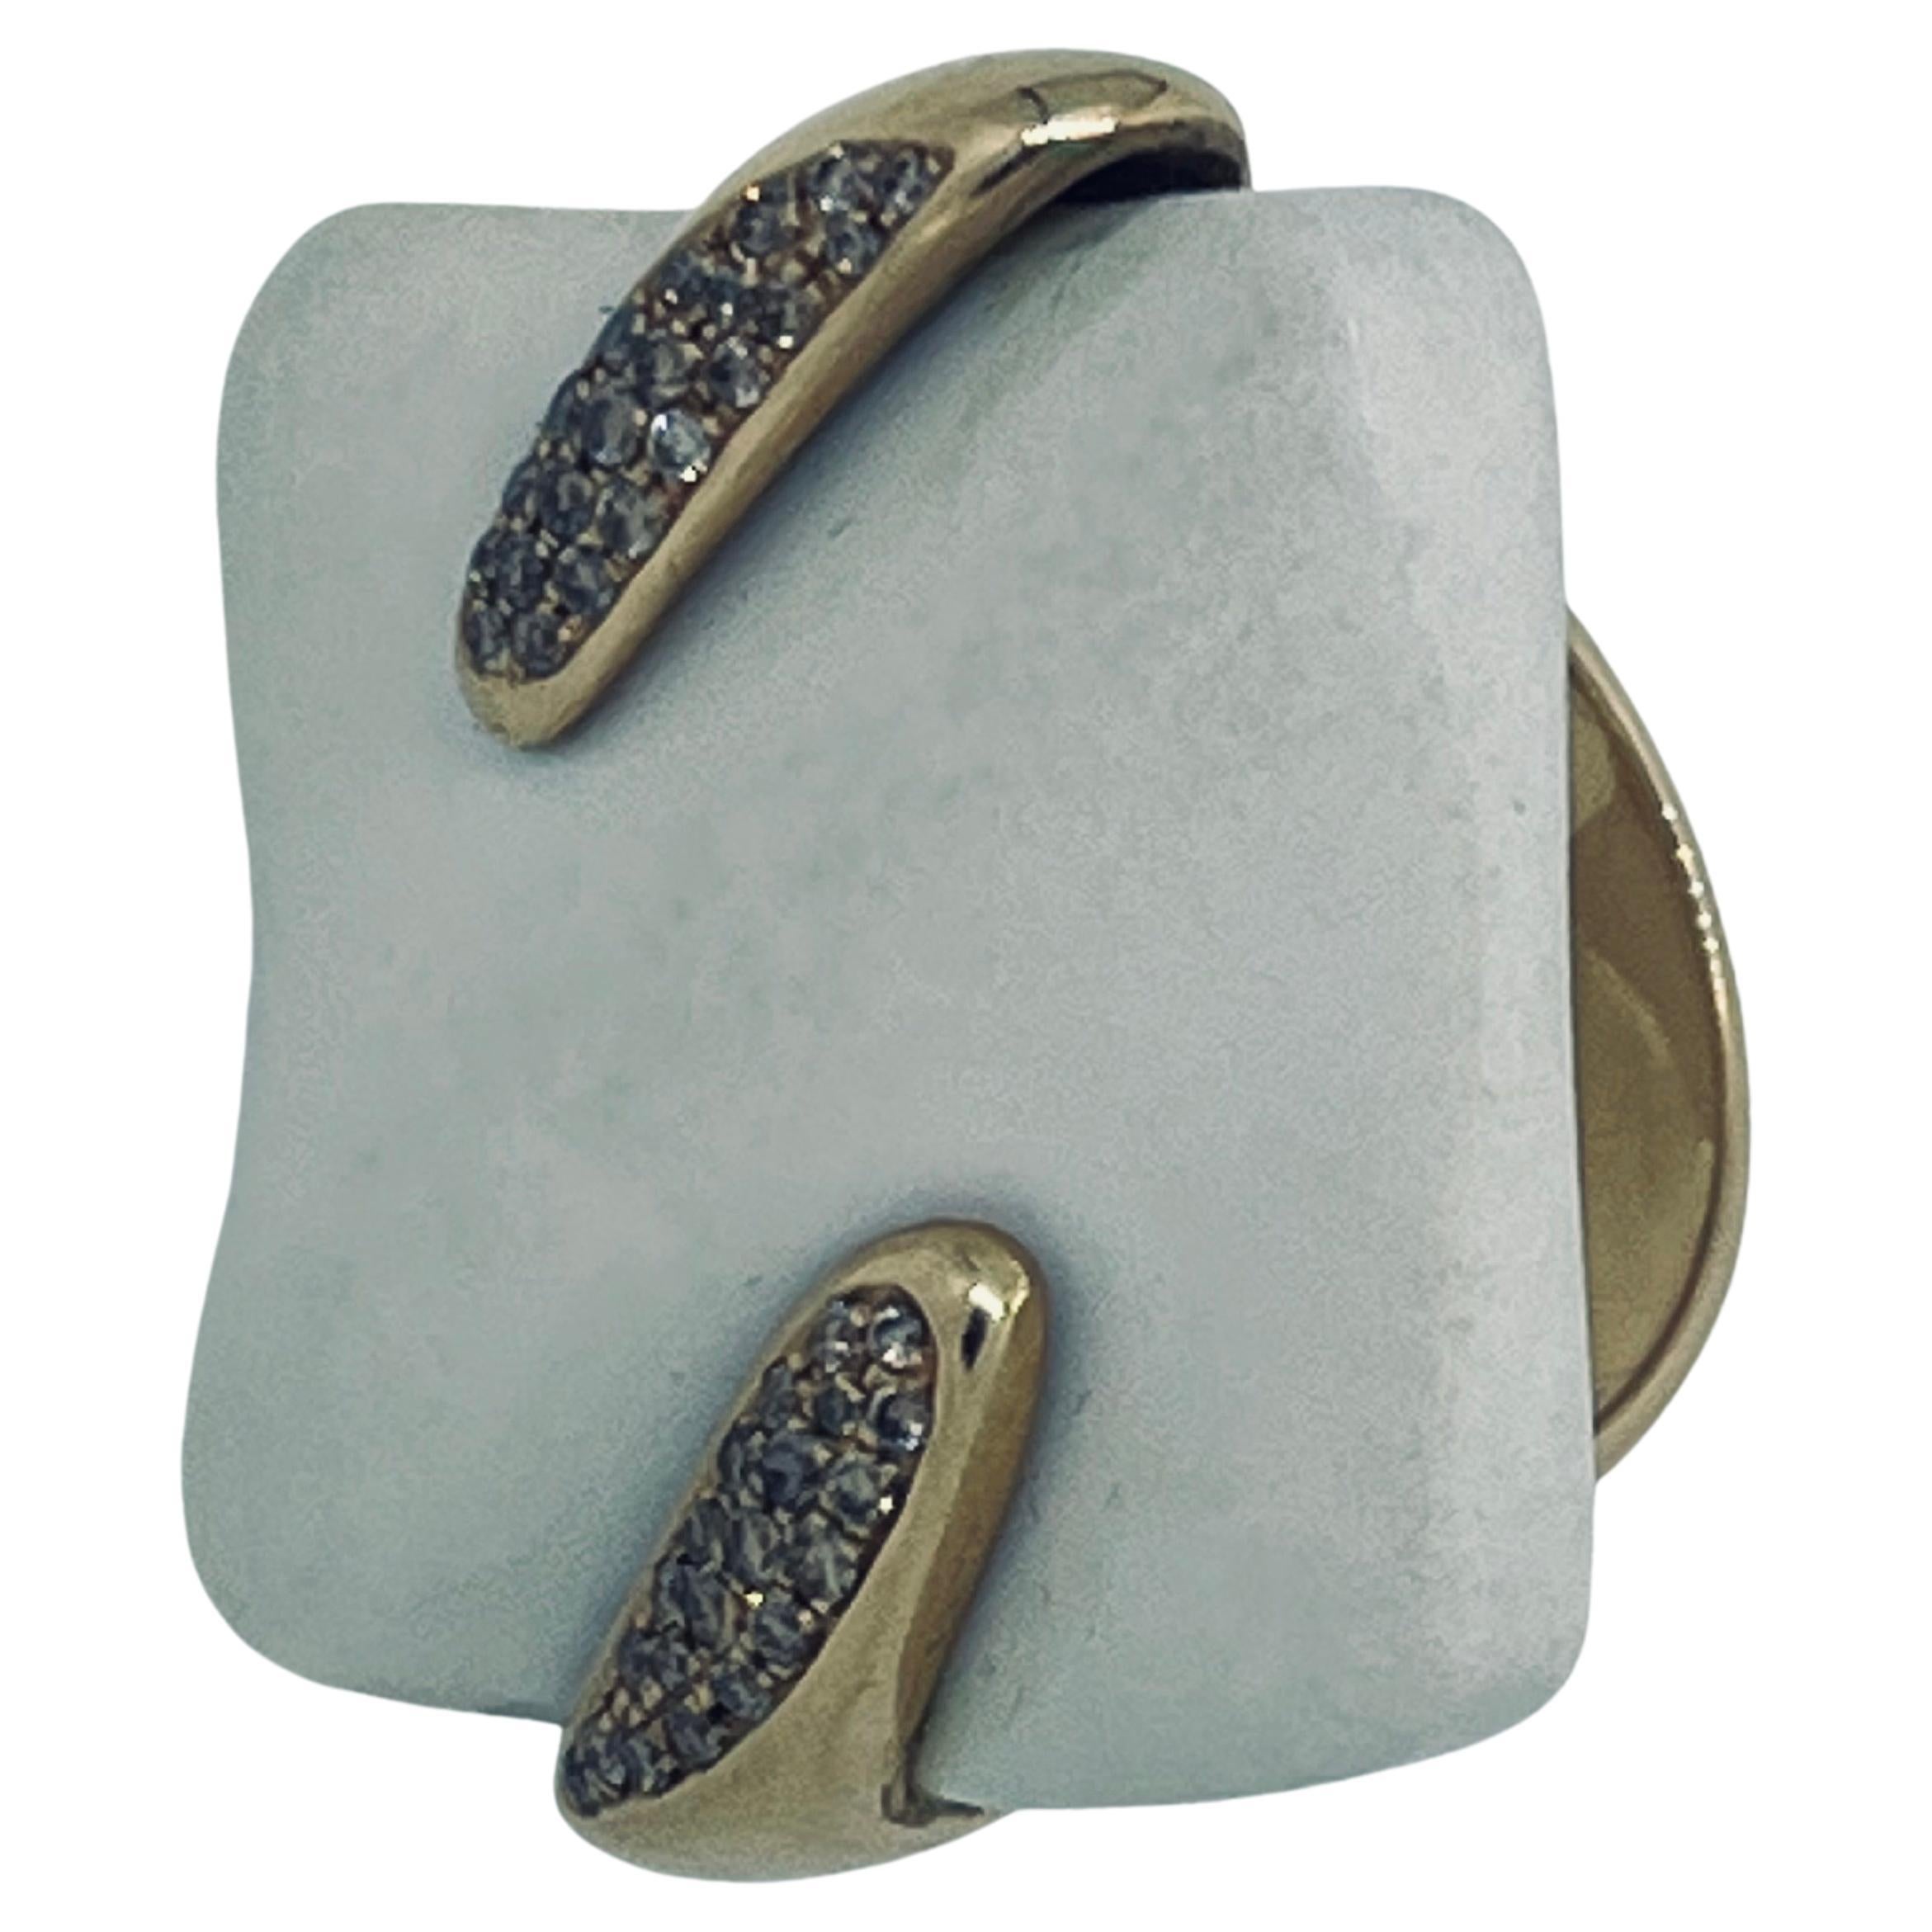 Gavello Ring aus 18 Karat Gold, farbigen Diamanten (beige) und Keramik, ca. 0,35 Karat Diamanten, Bruttogewicht 22,5 Gramm. Der Ring ist in der Größe veränderbar. Größe: M (UK), 53 (EU), 6.5 (US), 16.7mm (Ringinnendurchmesser), 52.5mm